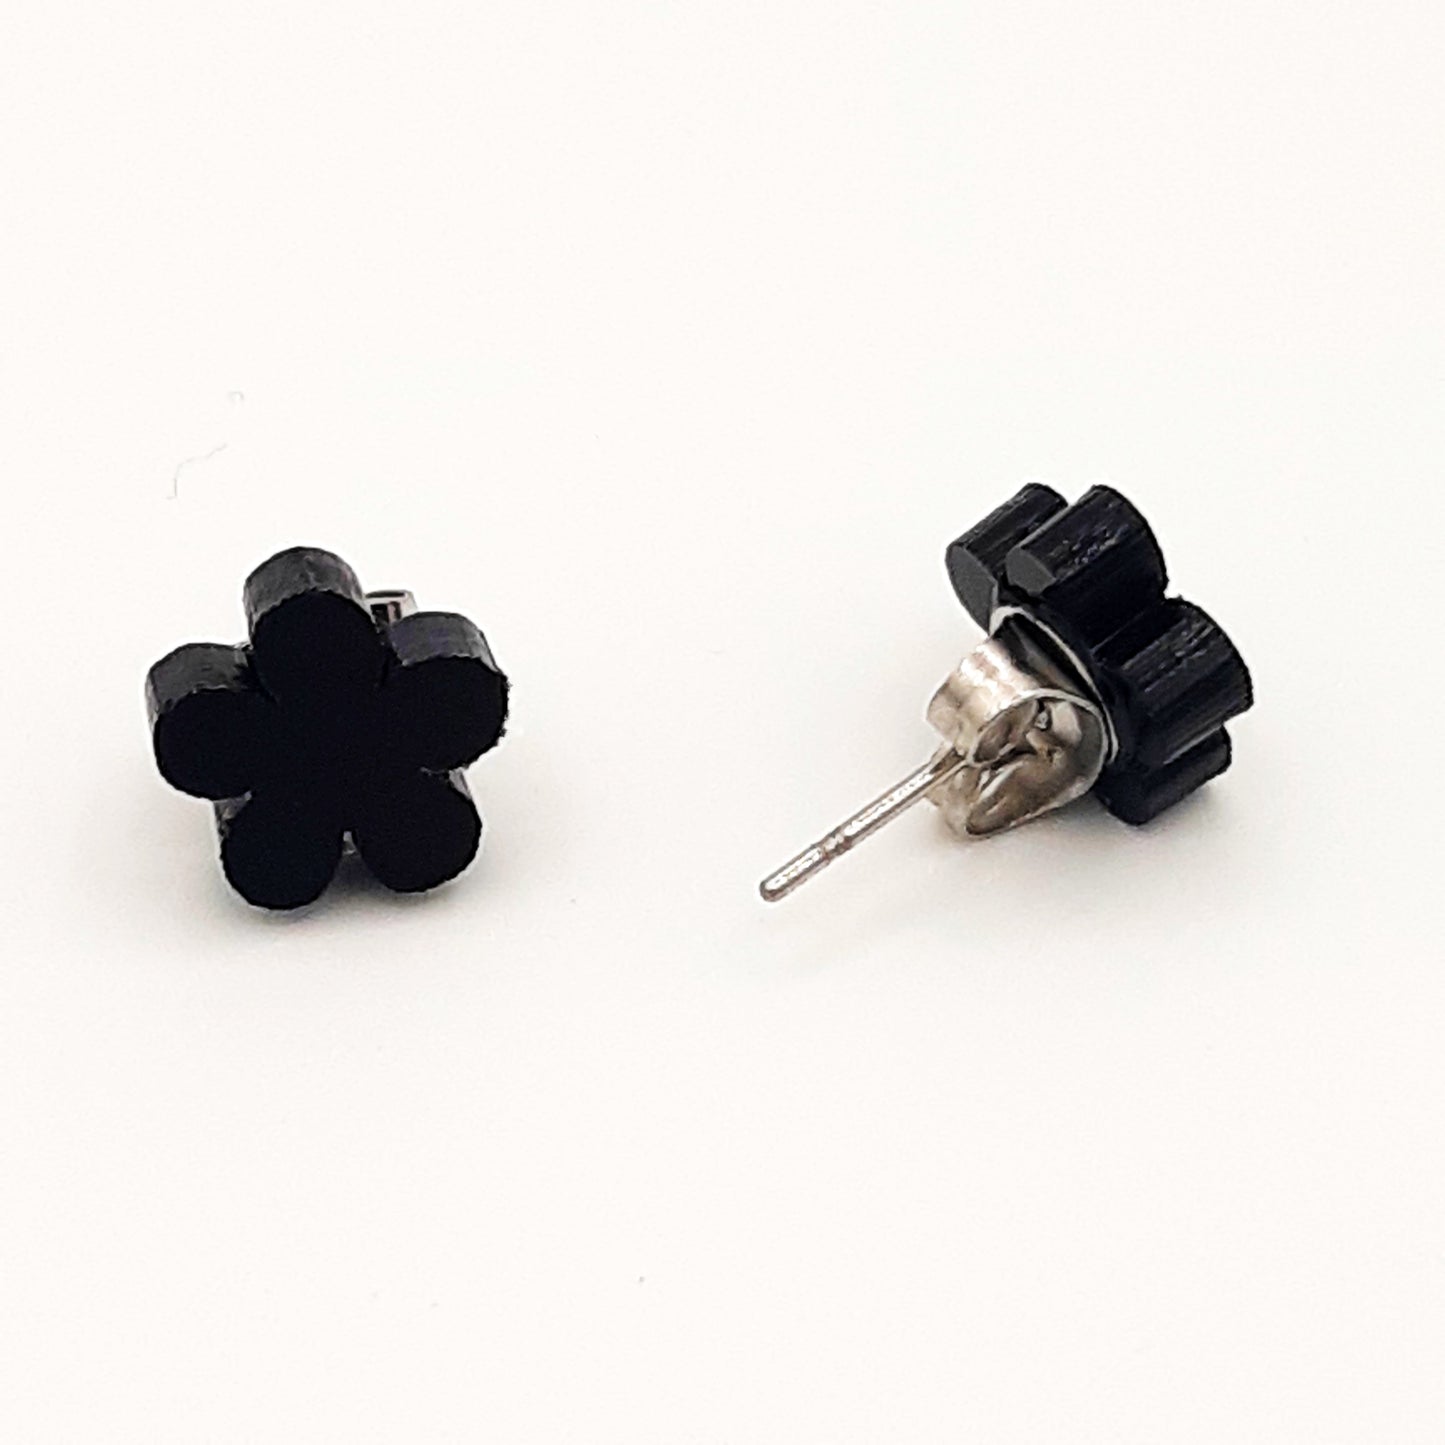 Flower laser cut acrylic earrings - daisy - black